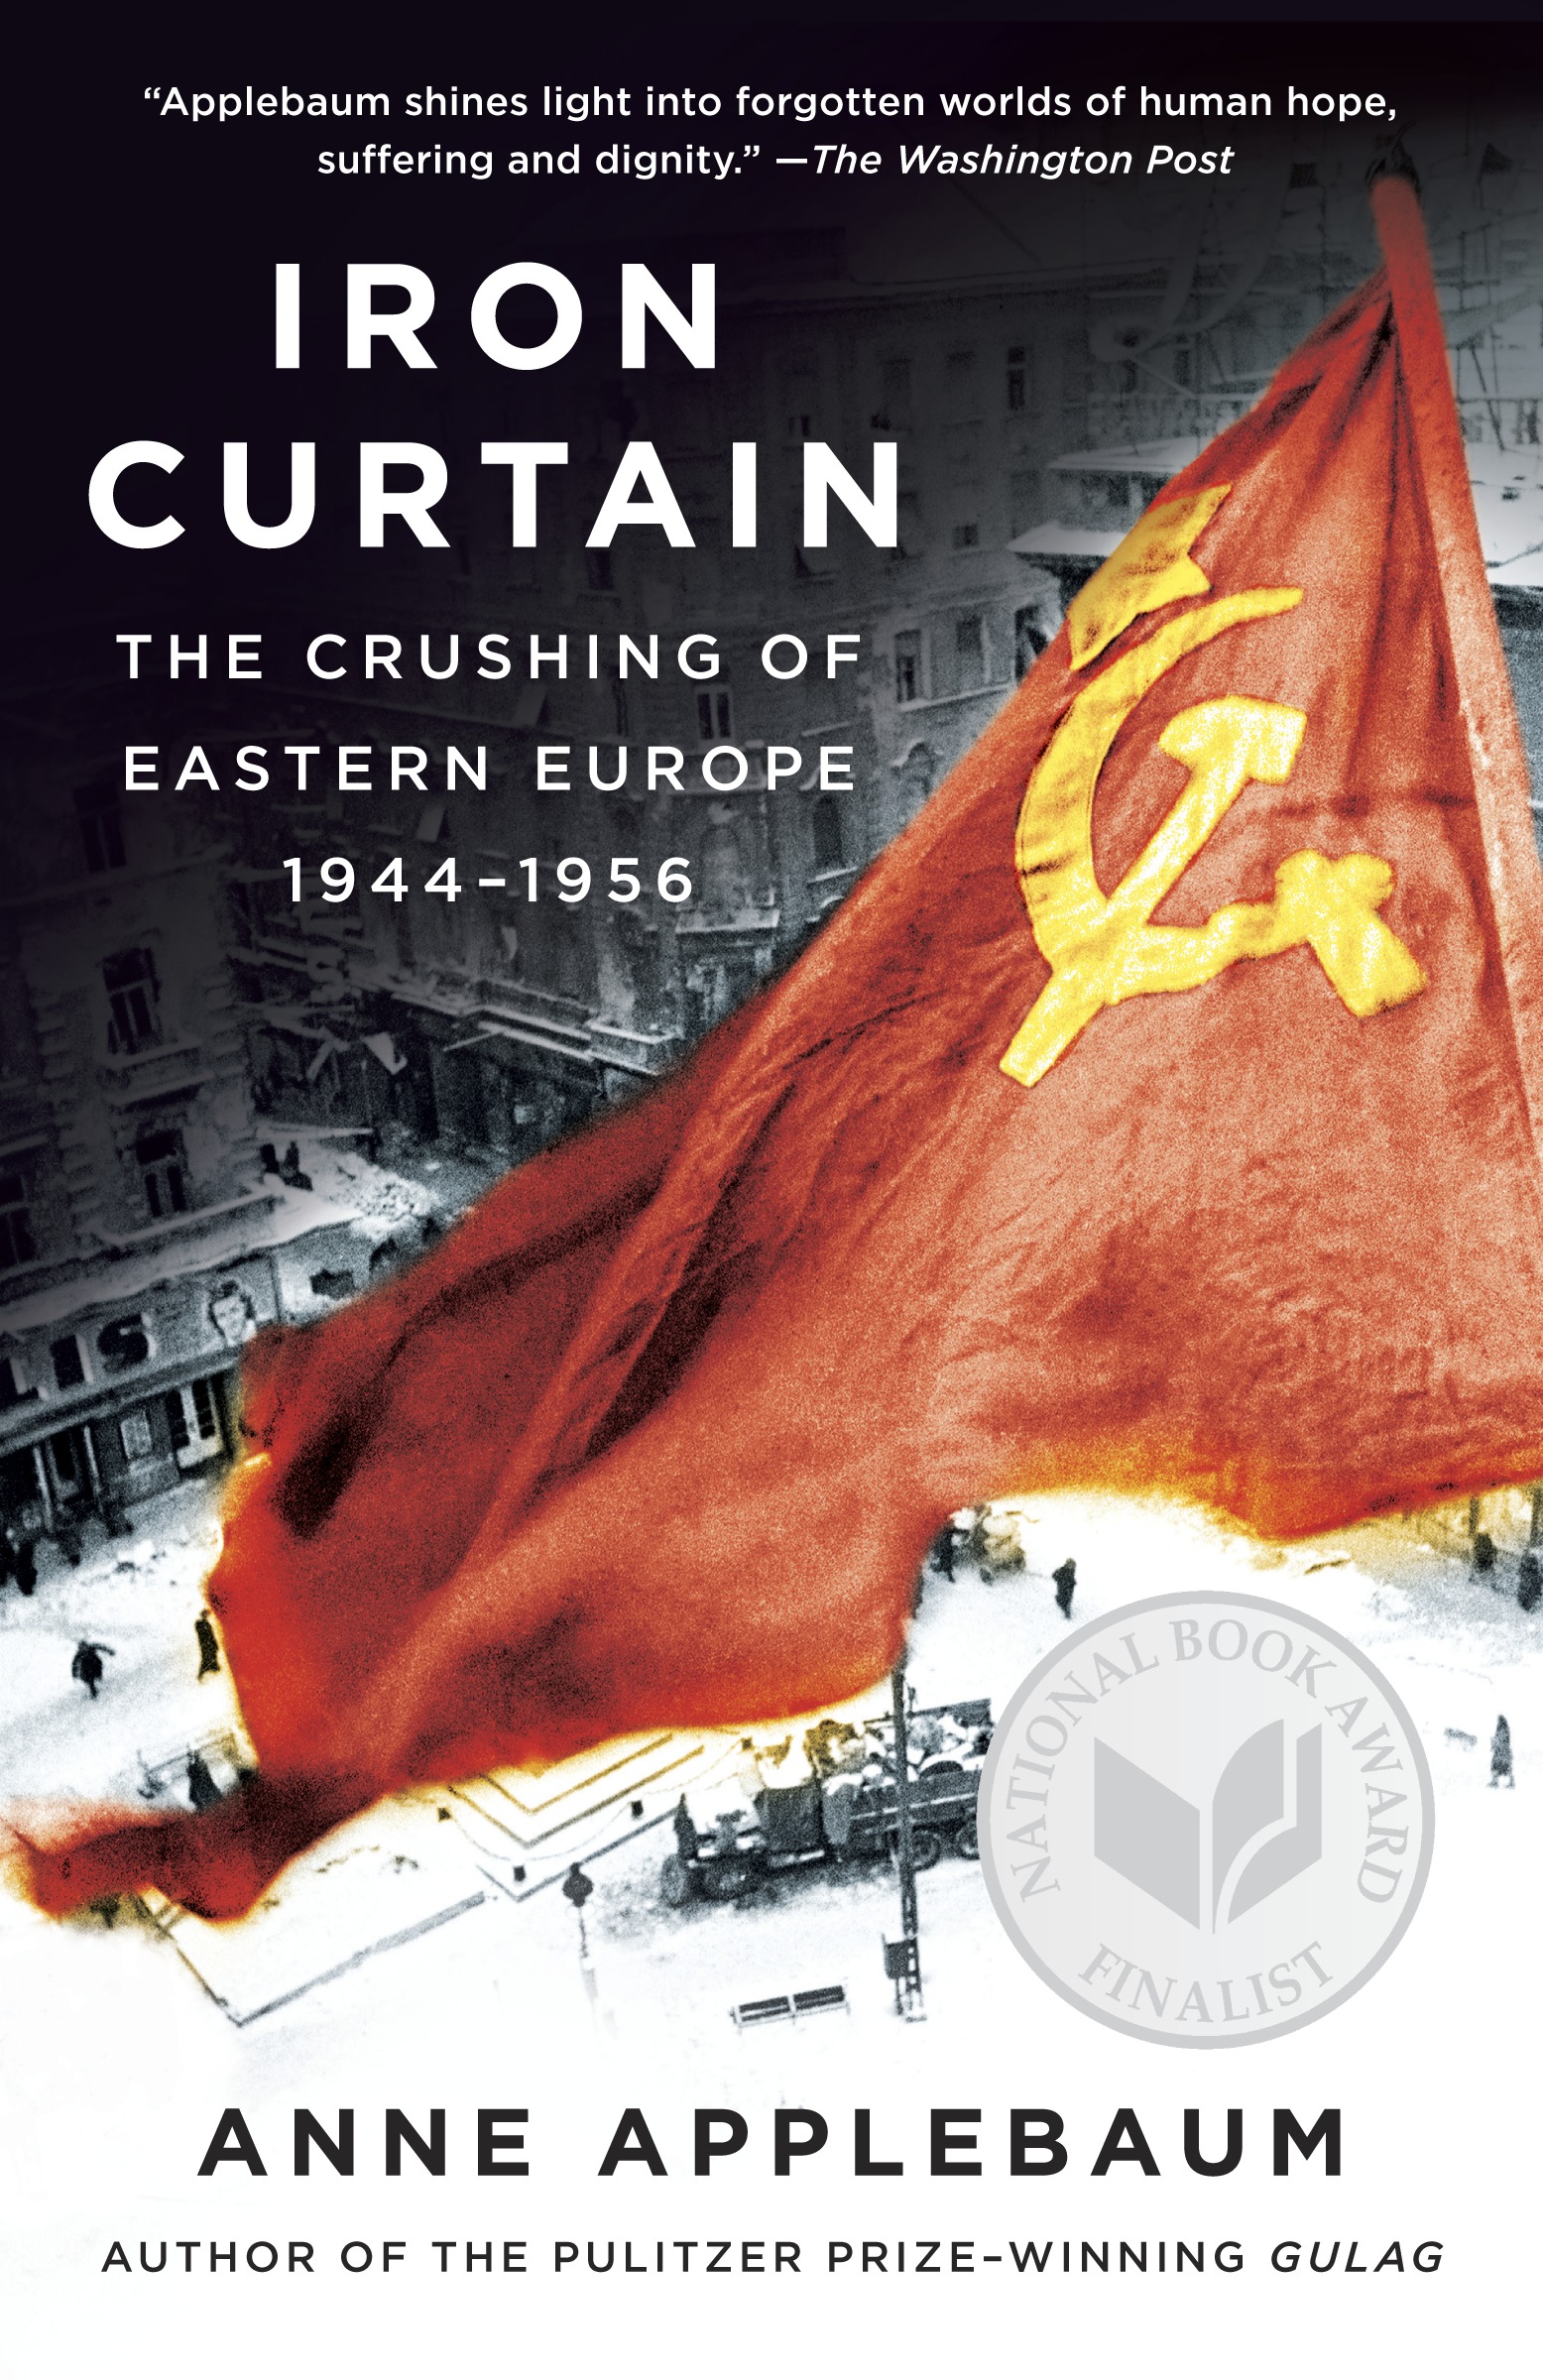 Iron Curtain - 15-24.99